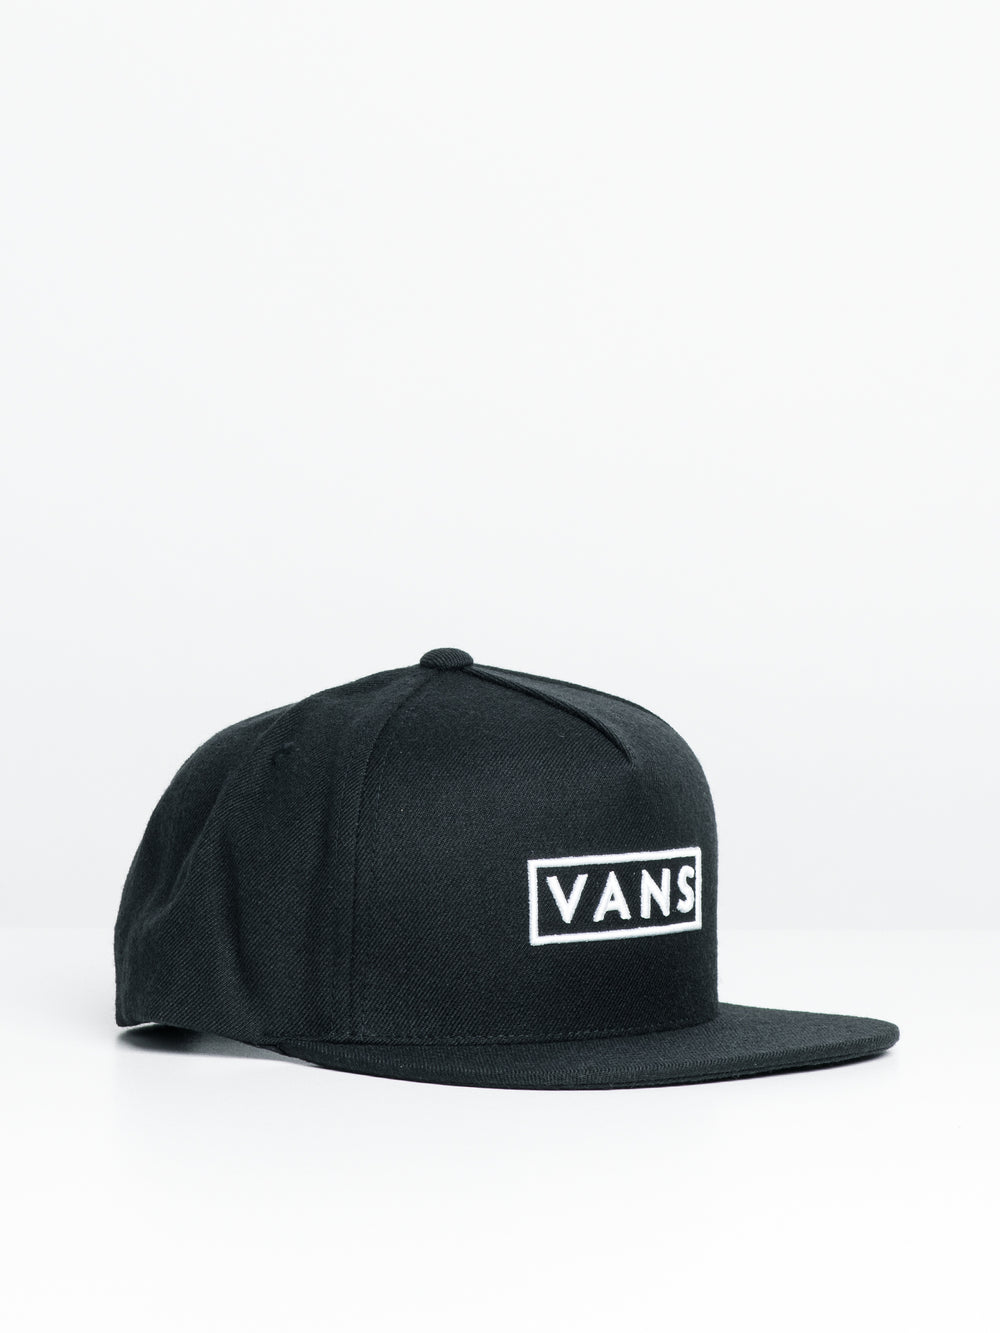 VANS EASY BOX SNAPBACK HAT